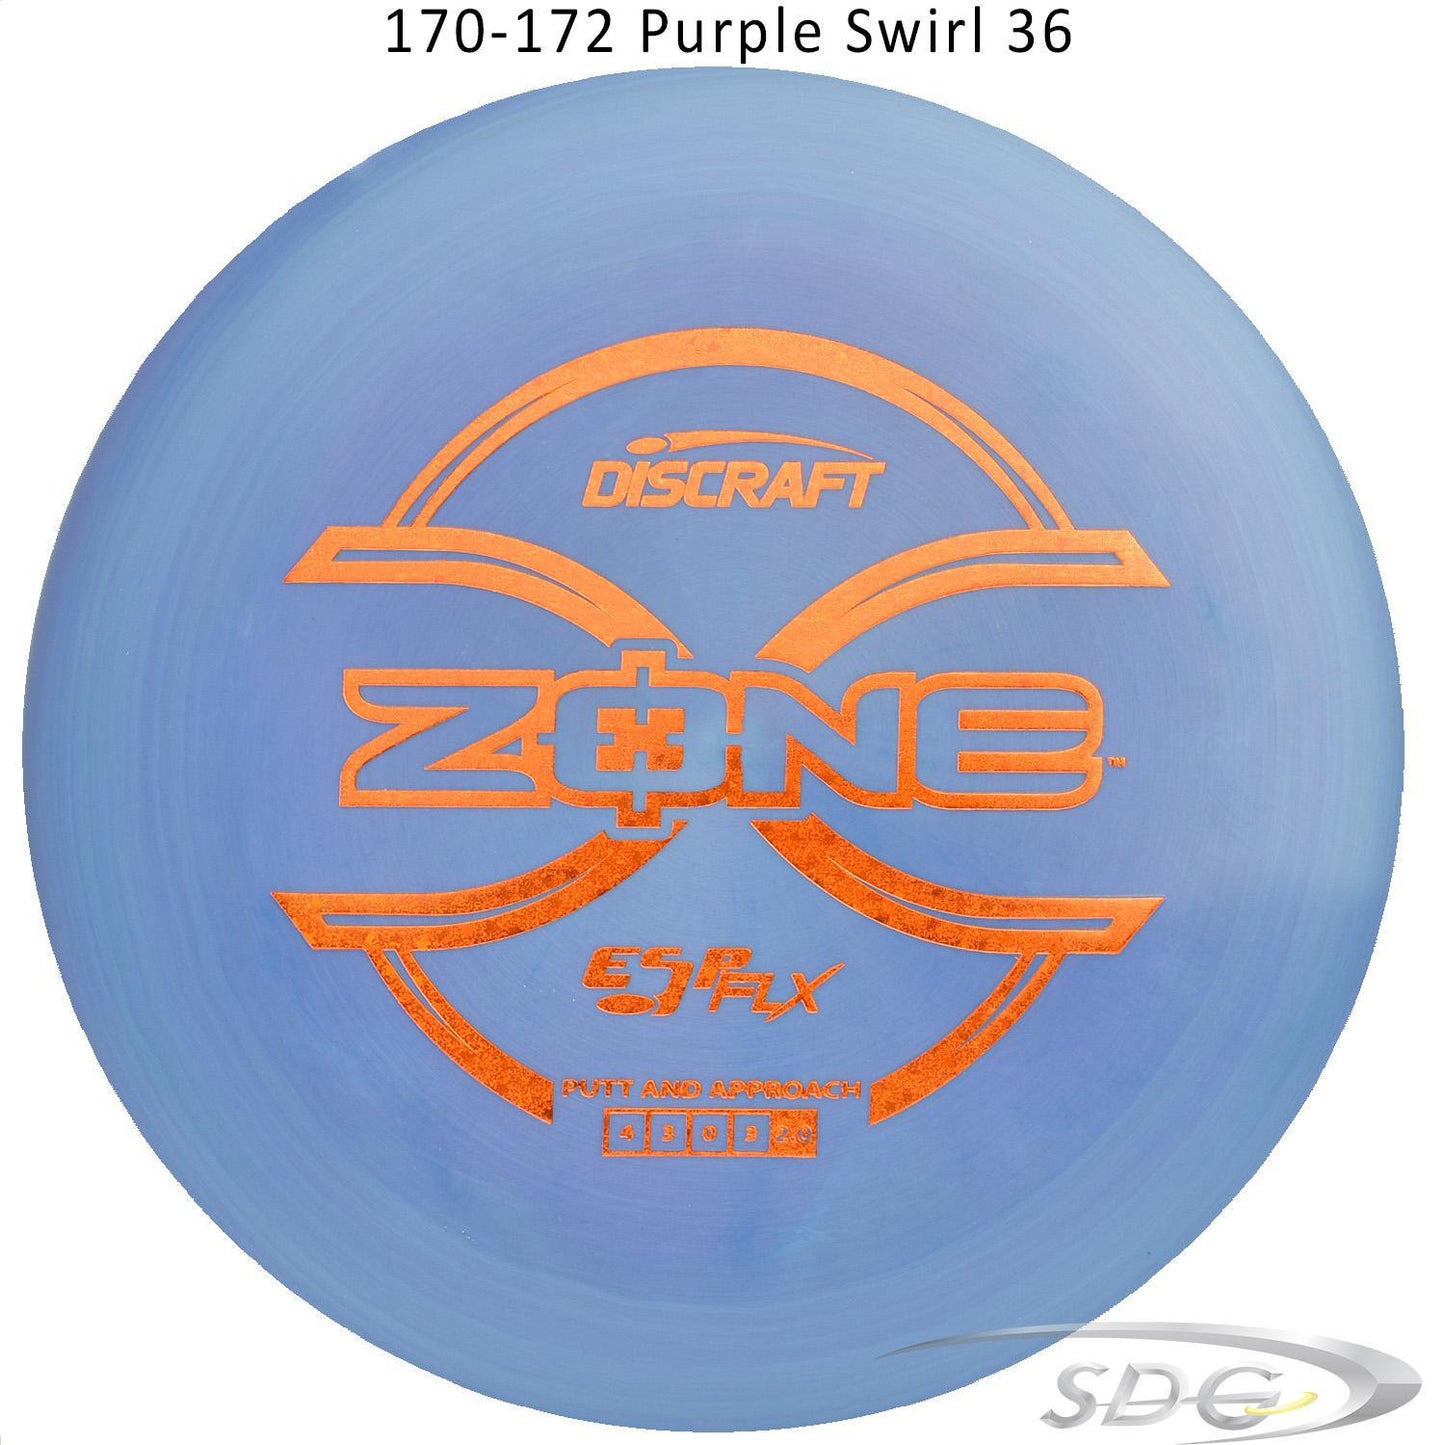 discraft-esp-flx-zone-disc-golf-putter 170-172 Purple Swirl 36 